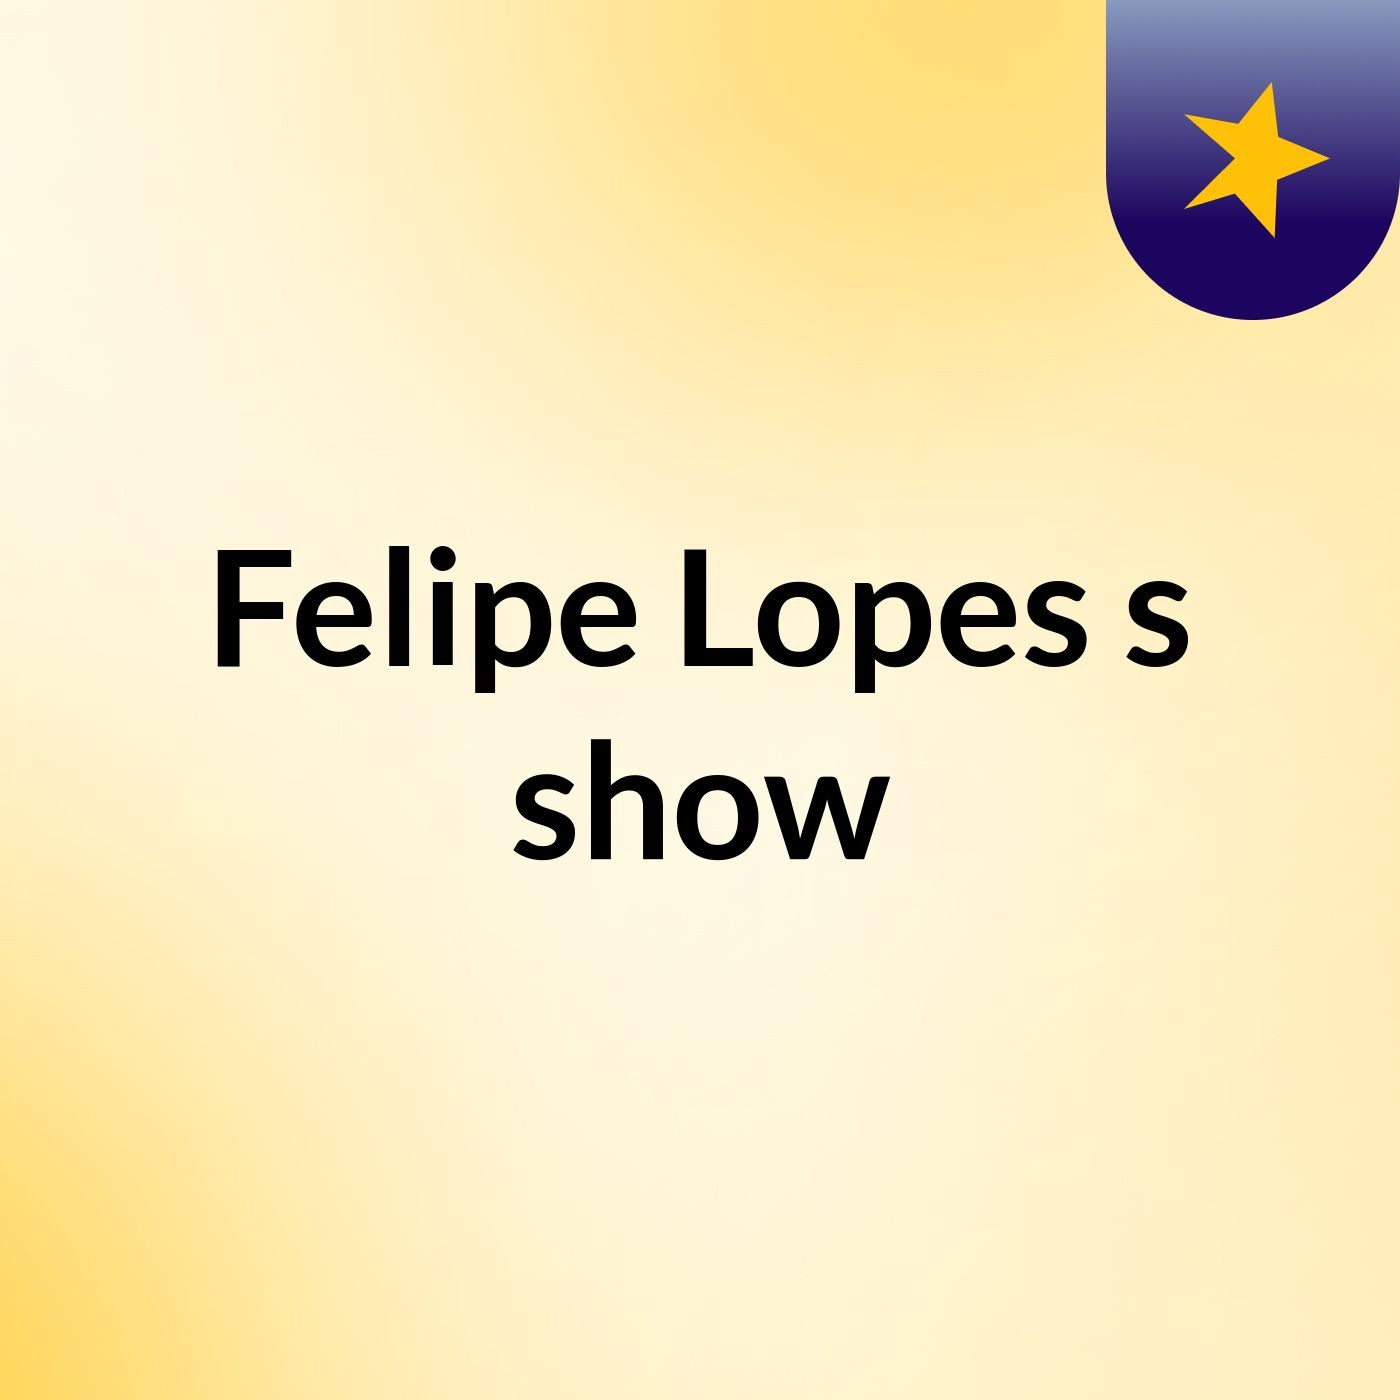 Felipe Lopes's show